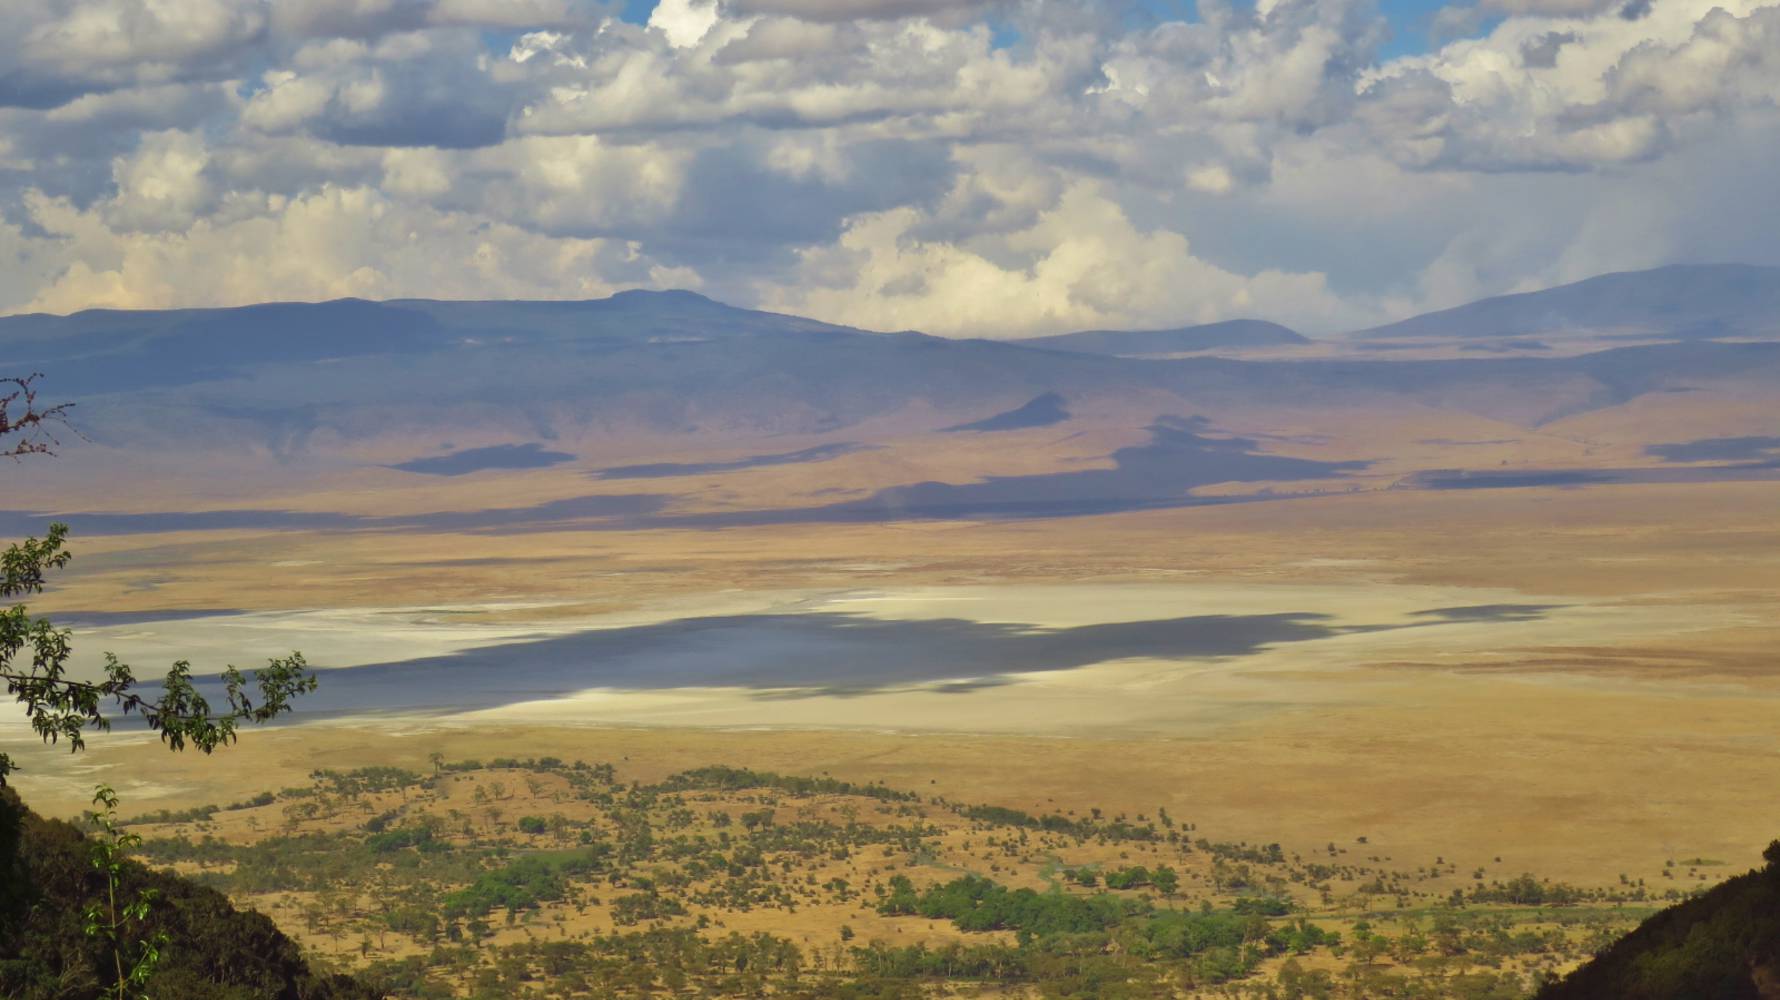 Dag 7 – 4/11 vrijdag – Lake Eyasi – Ngorongoro Conservation Area